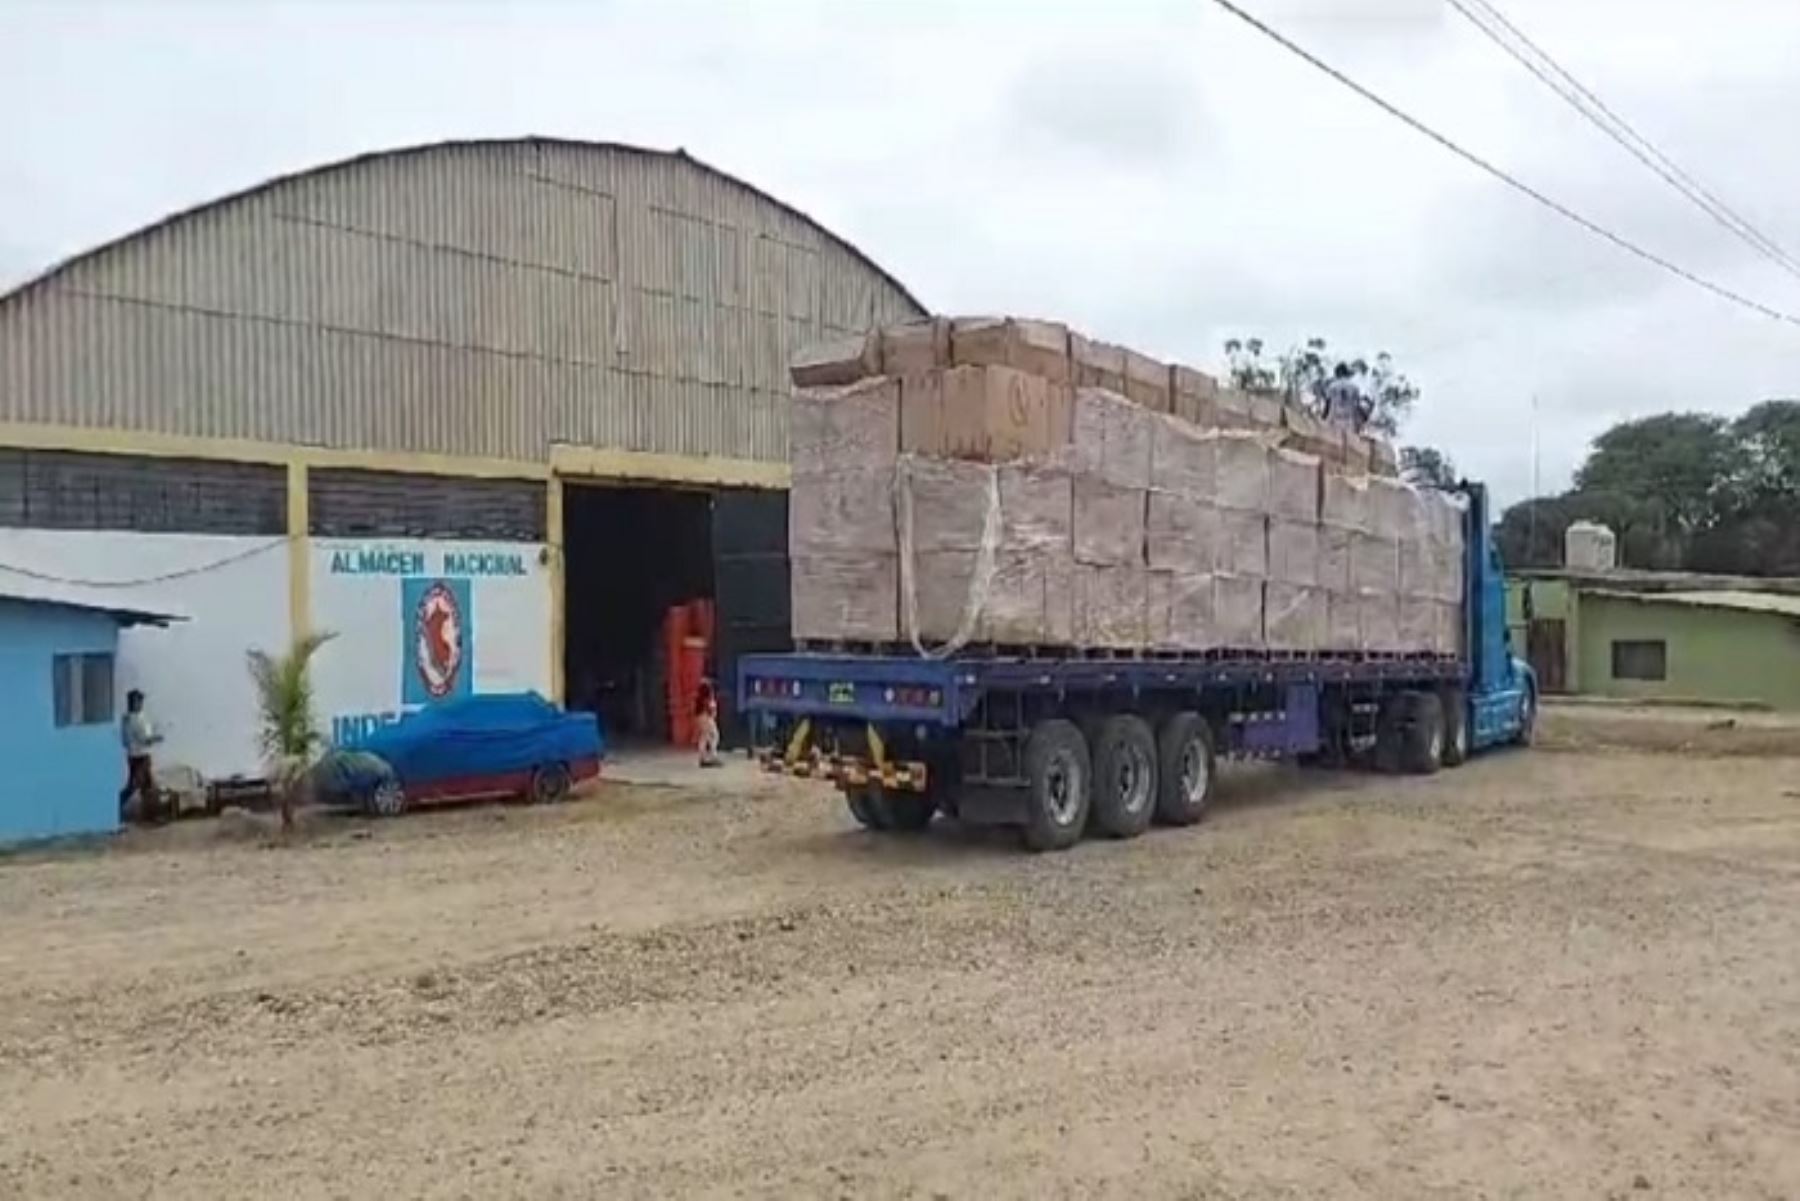 Para Tumbes se ha destinado 15 camiones con ayuda humanitaria, de los cuales ya han arribado hasta este momento 3 de ellos.